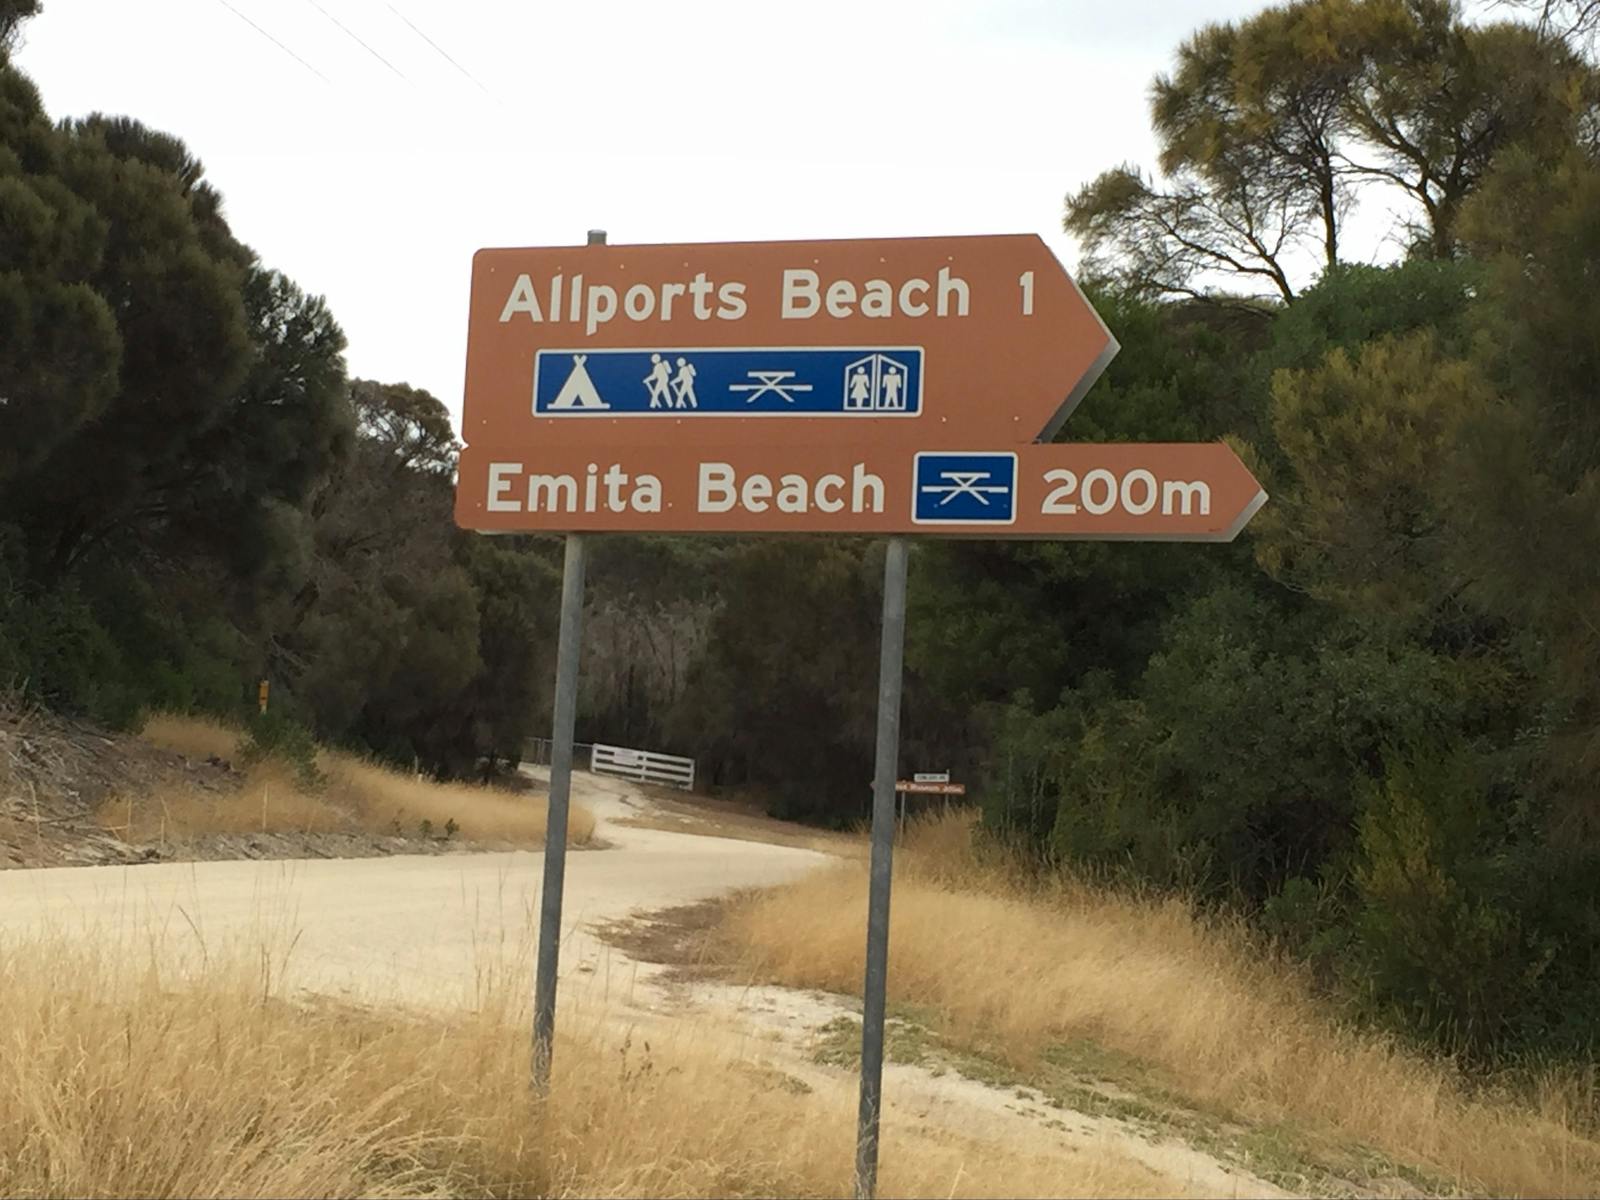 Allports Beach Flinders Island Tasmania